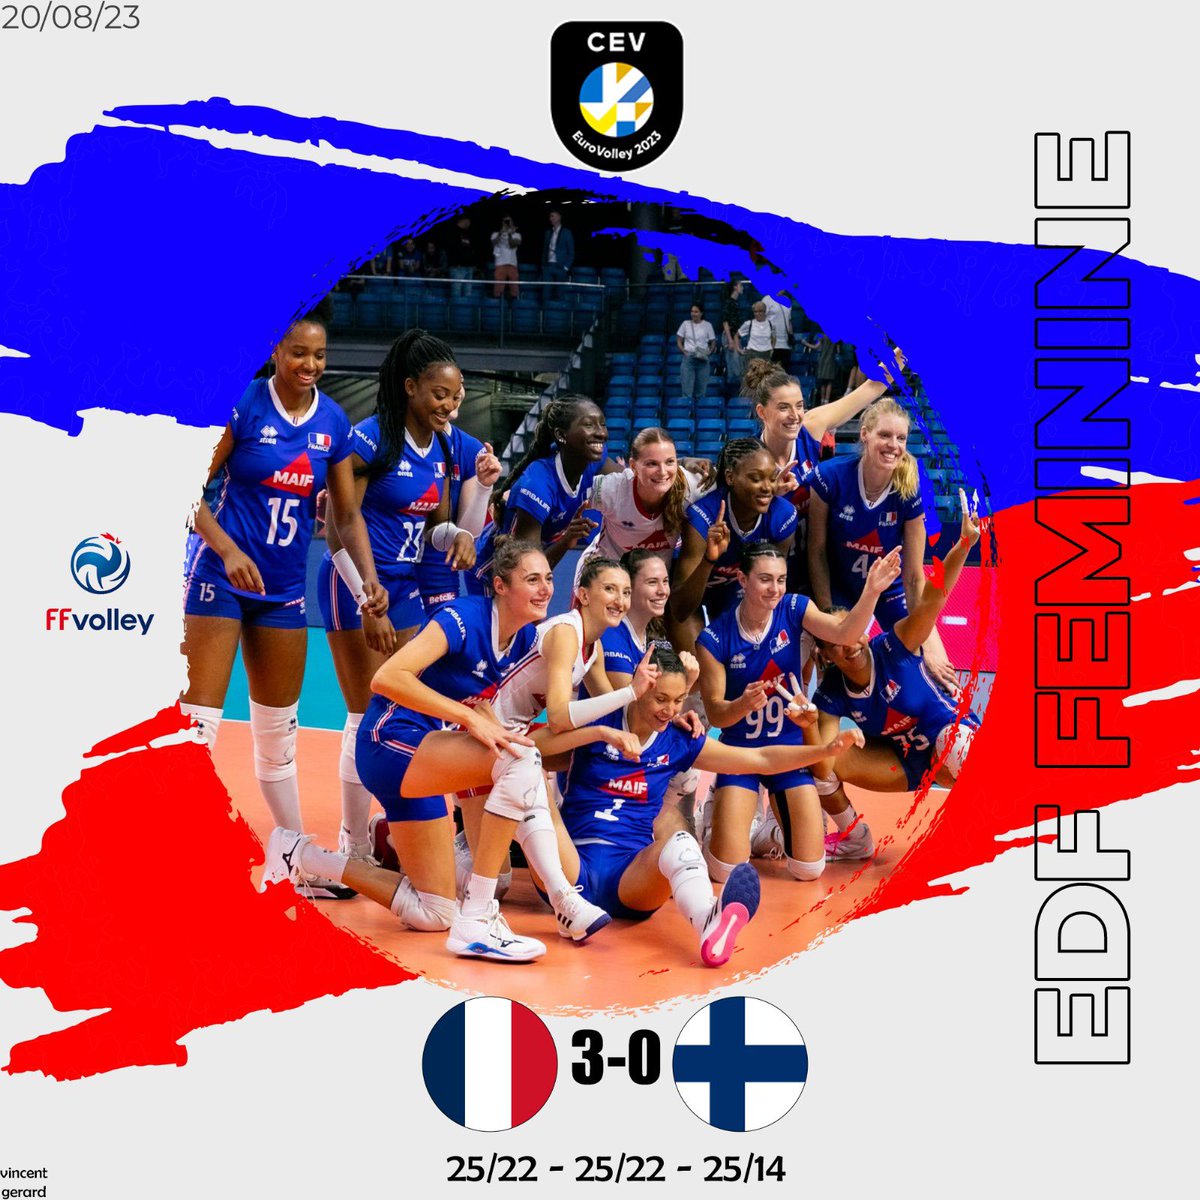 [ EDF F ] 

Les bleues sont toujours invaincues dans cet Euro F 2023 après un 3ème succès contre la Finlande 🇫🇮 3/0 ✅

💙🤍❤️

Image au centre : @CEVolleyball 

#volleyball #sport #volley #ffvb #ffvolley